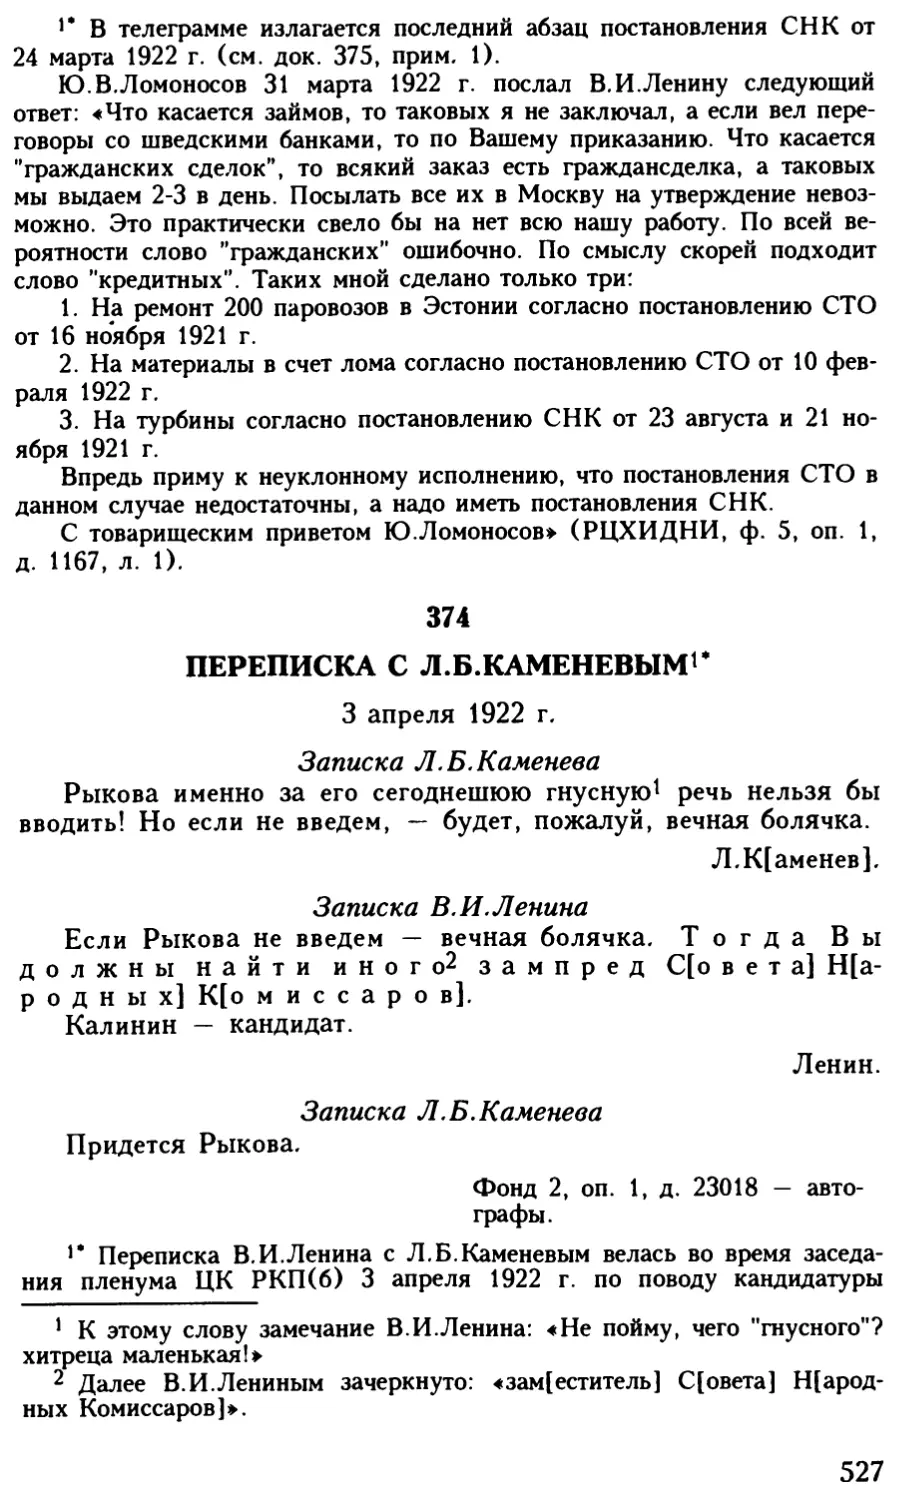 374. Переписка с Л.Б.Каменевым. 3 апреля 1922 г